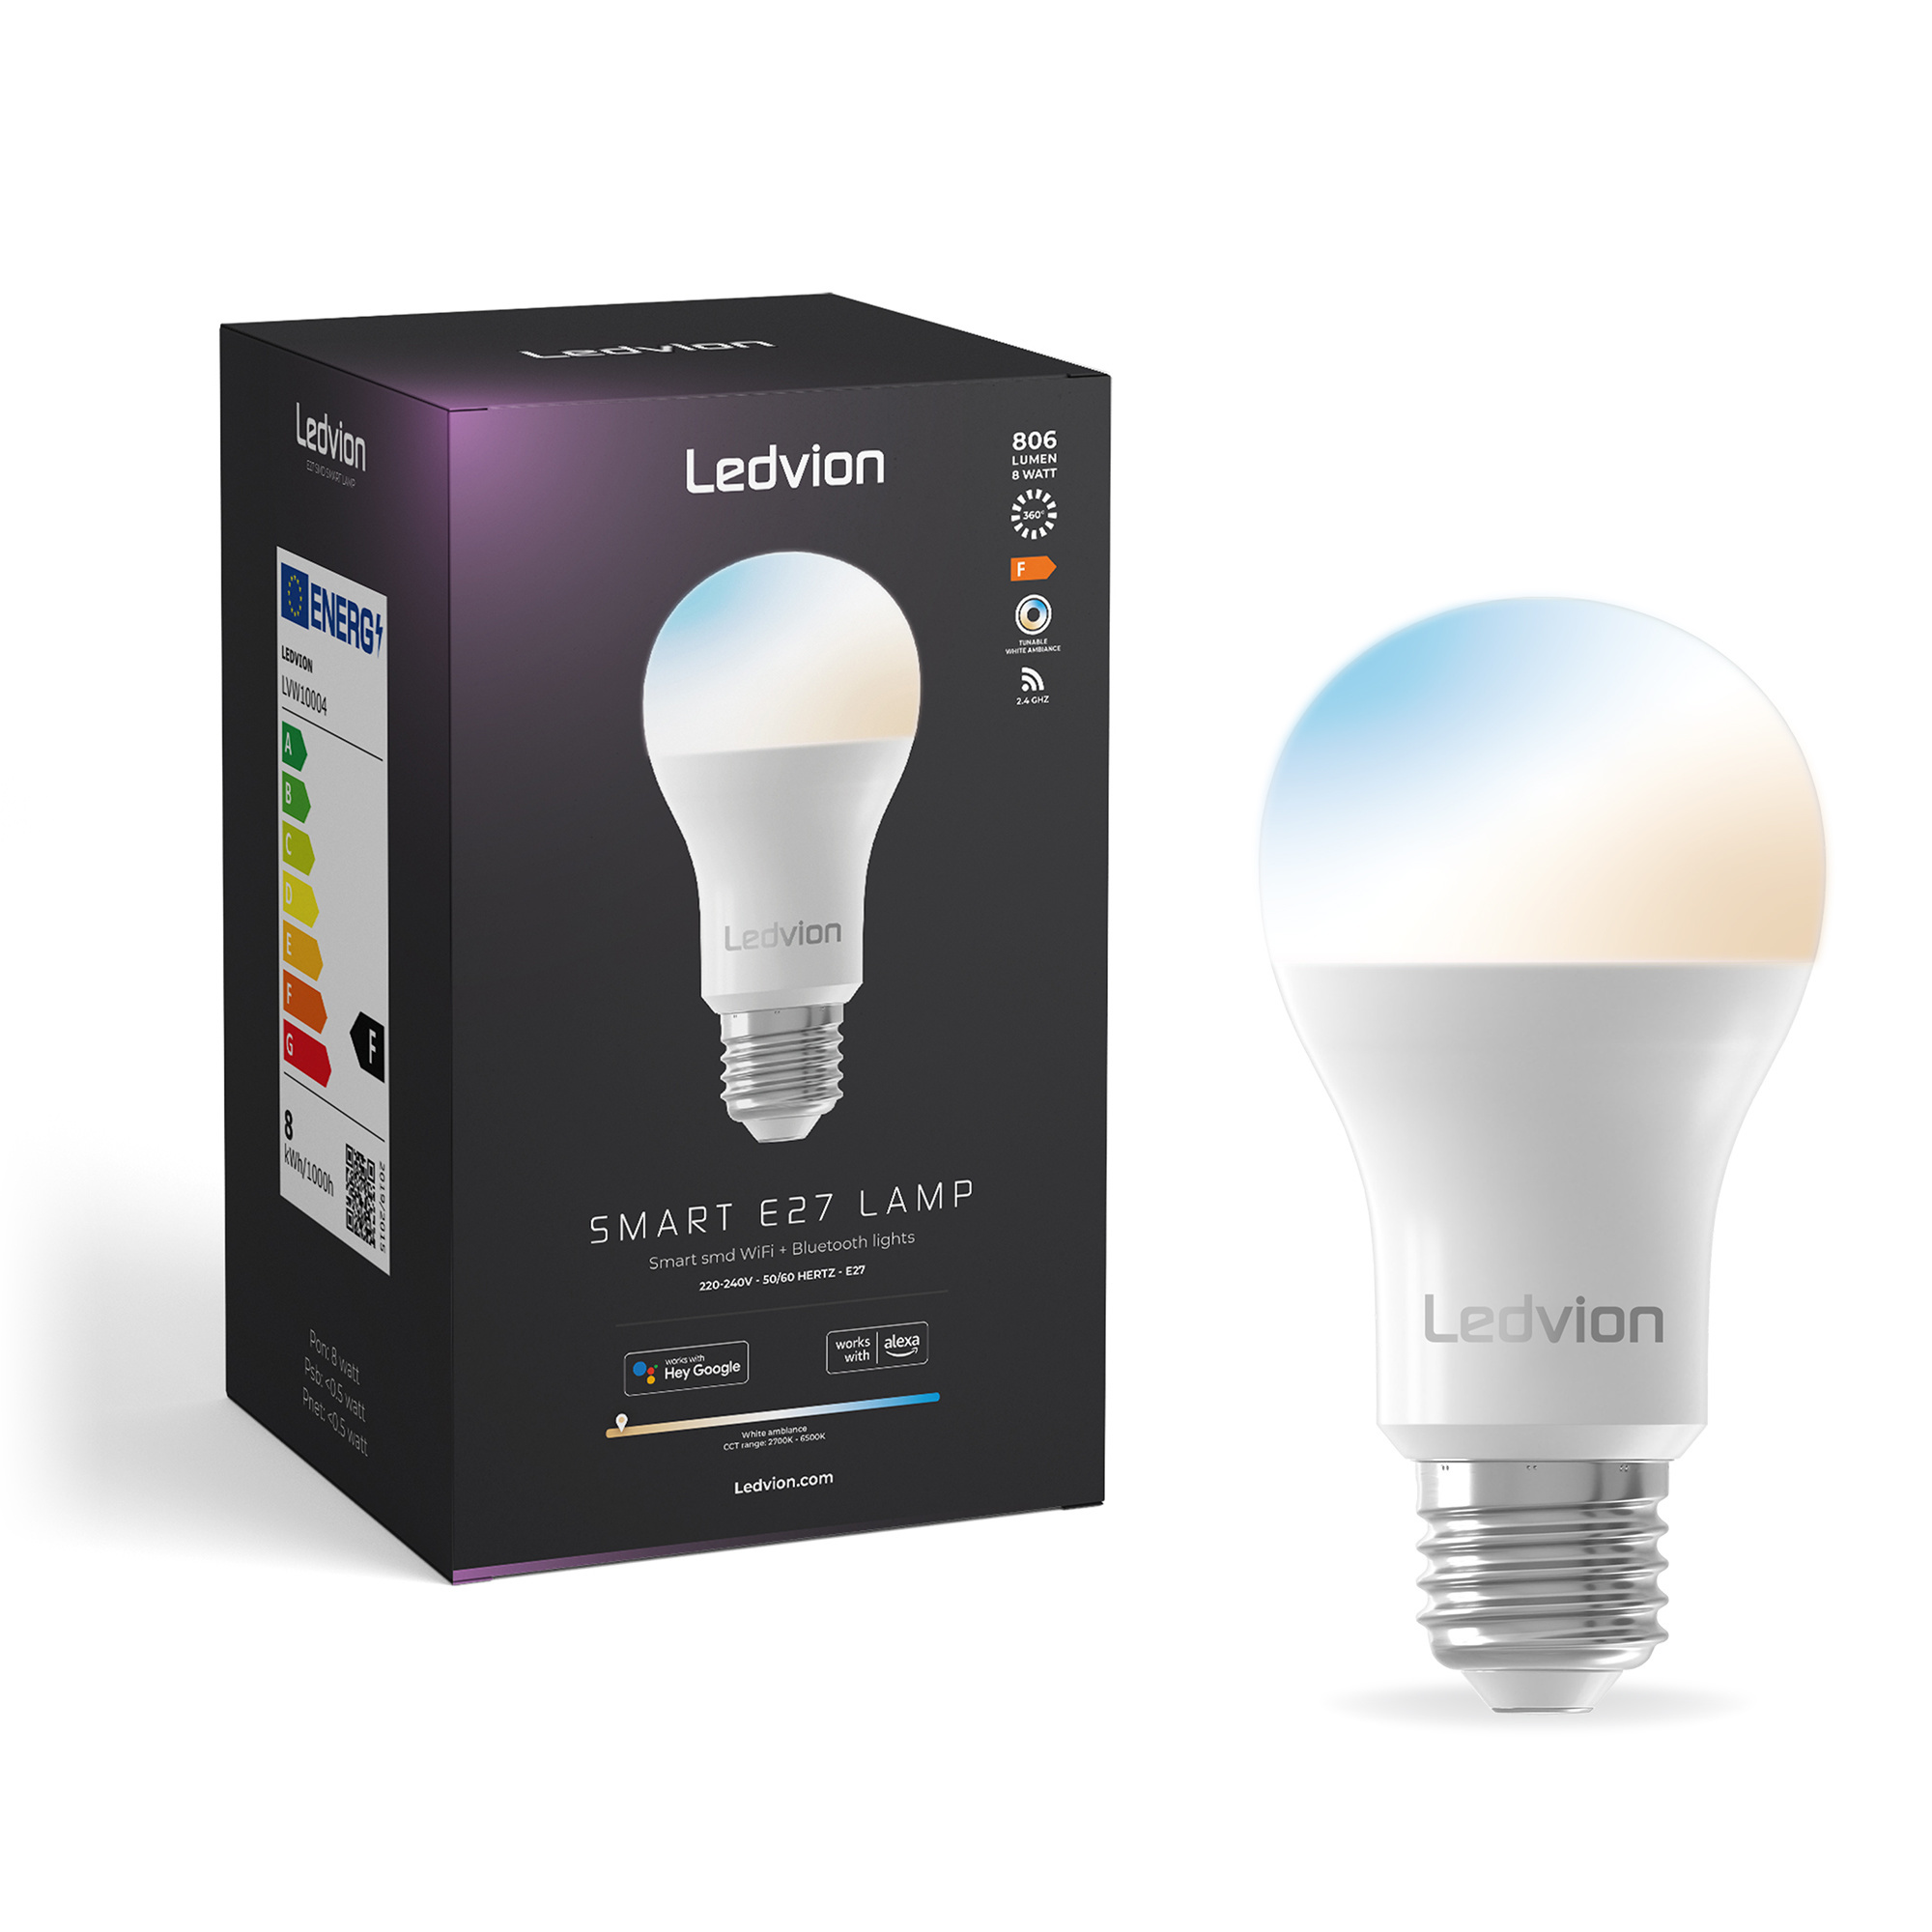 Lampada LED E27 4W Luce Ambrata 200 Lumen - Coop LED